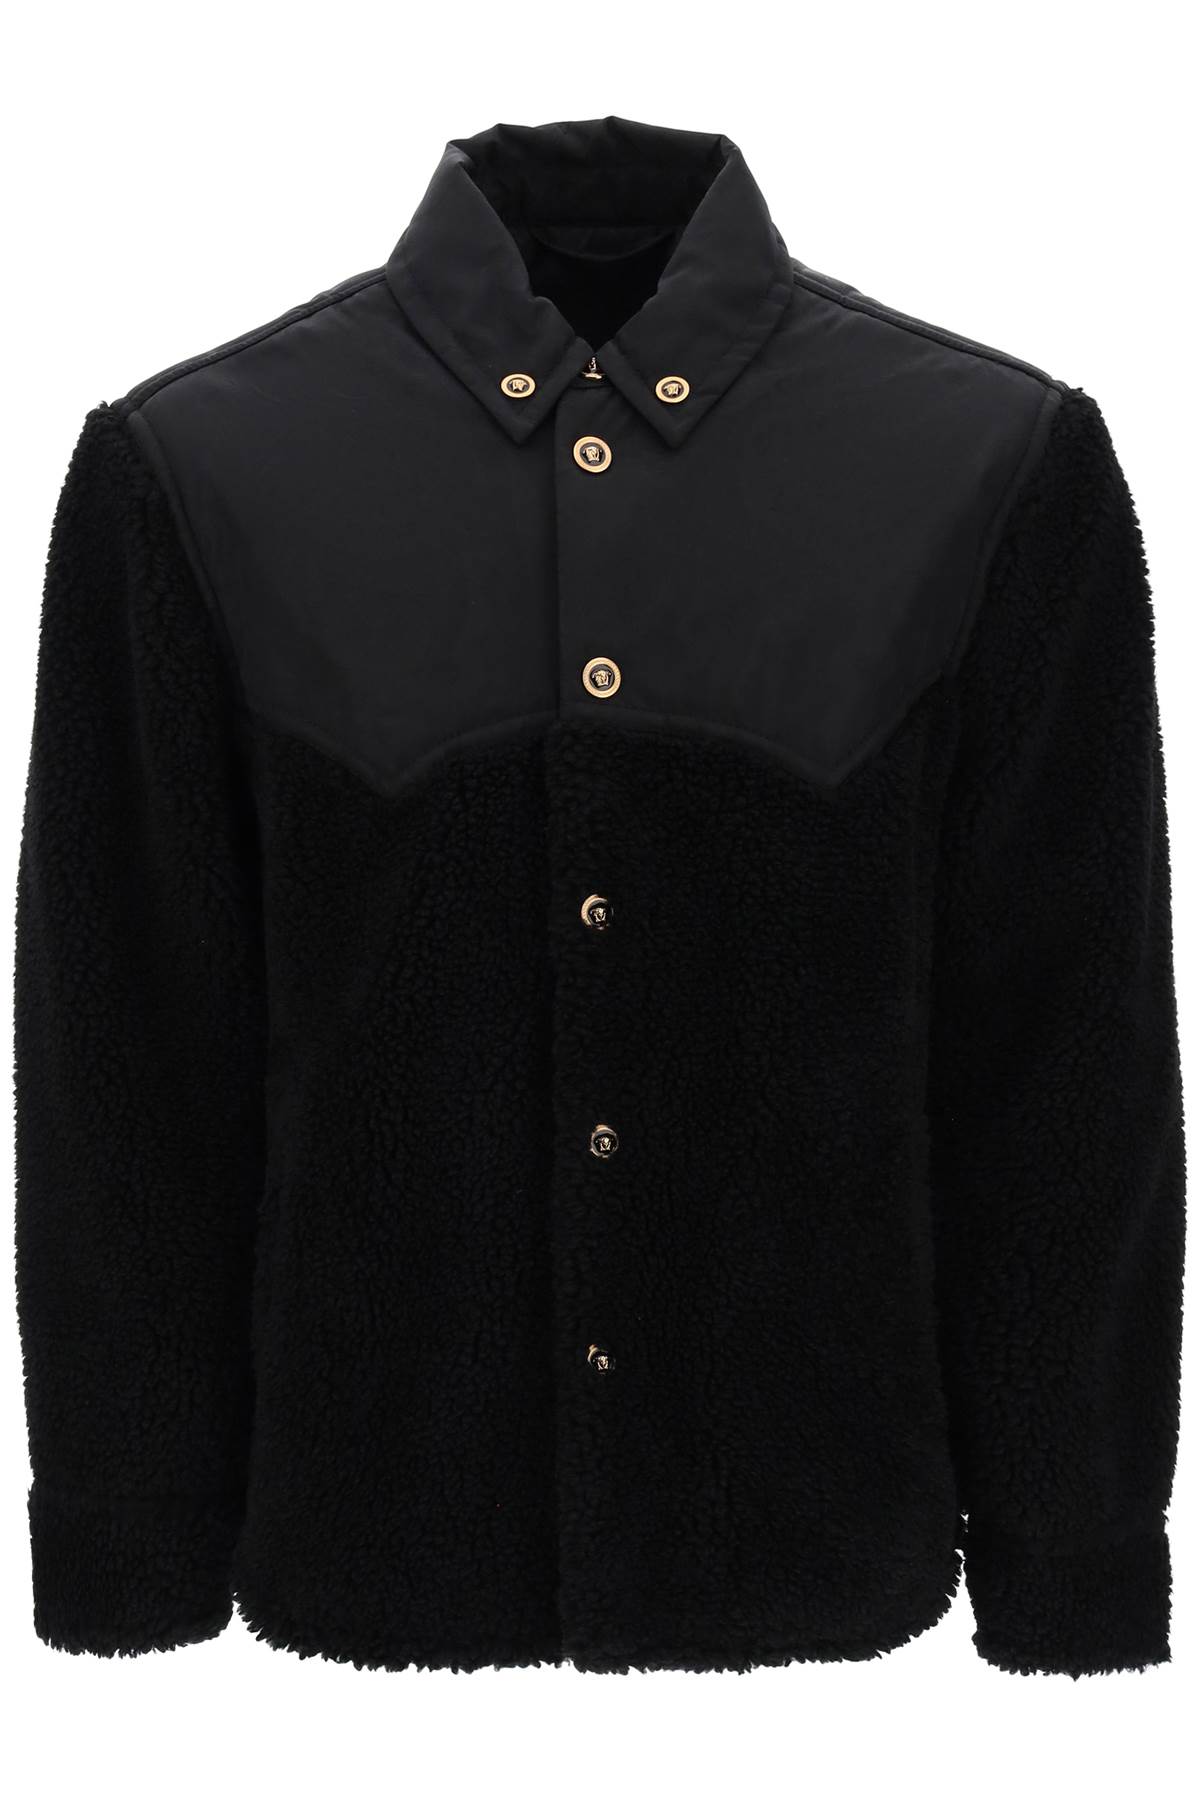 Shop Versace Barocco Silhouette Fleece Jacket In Black (black)